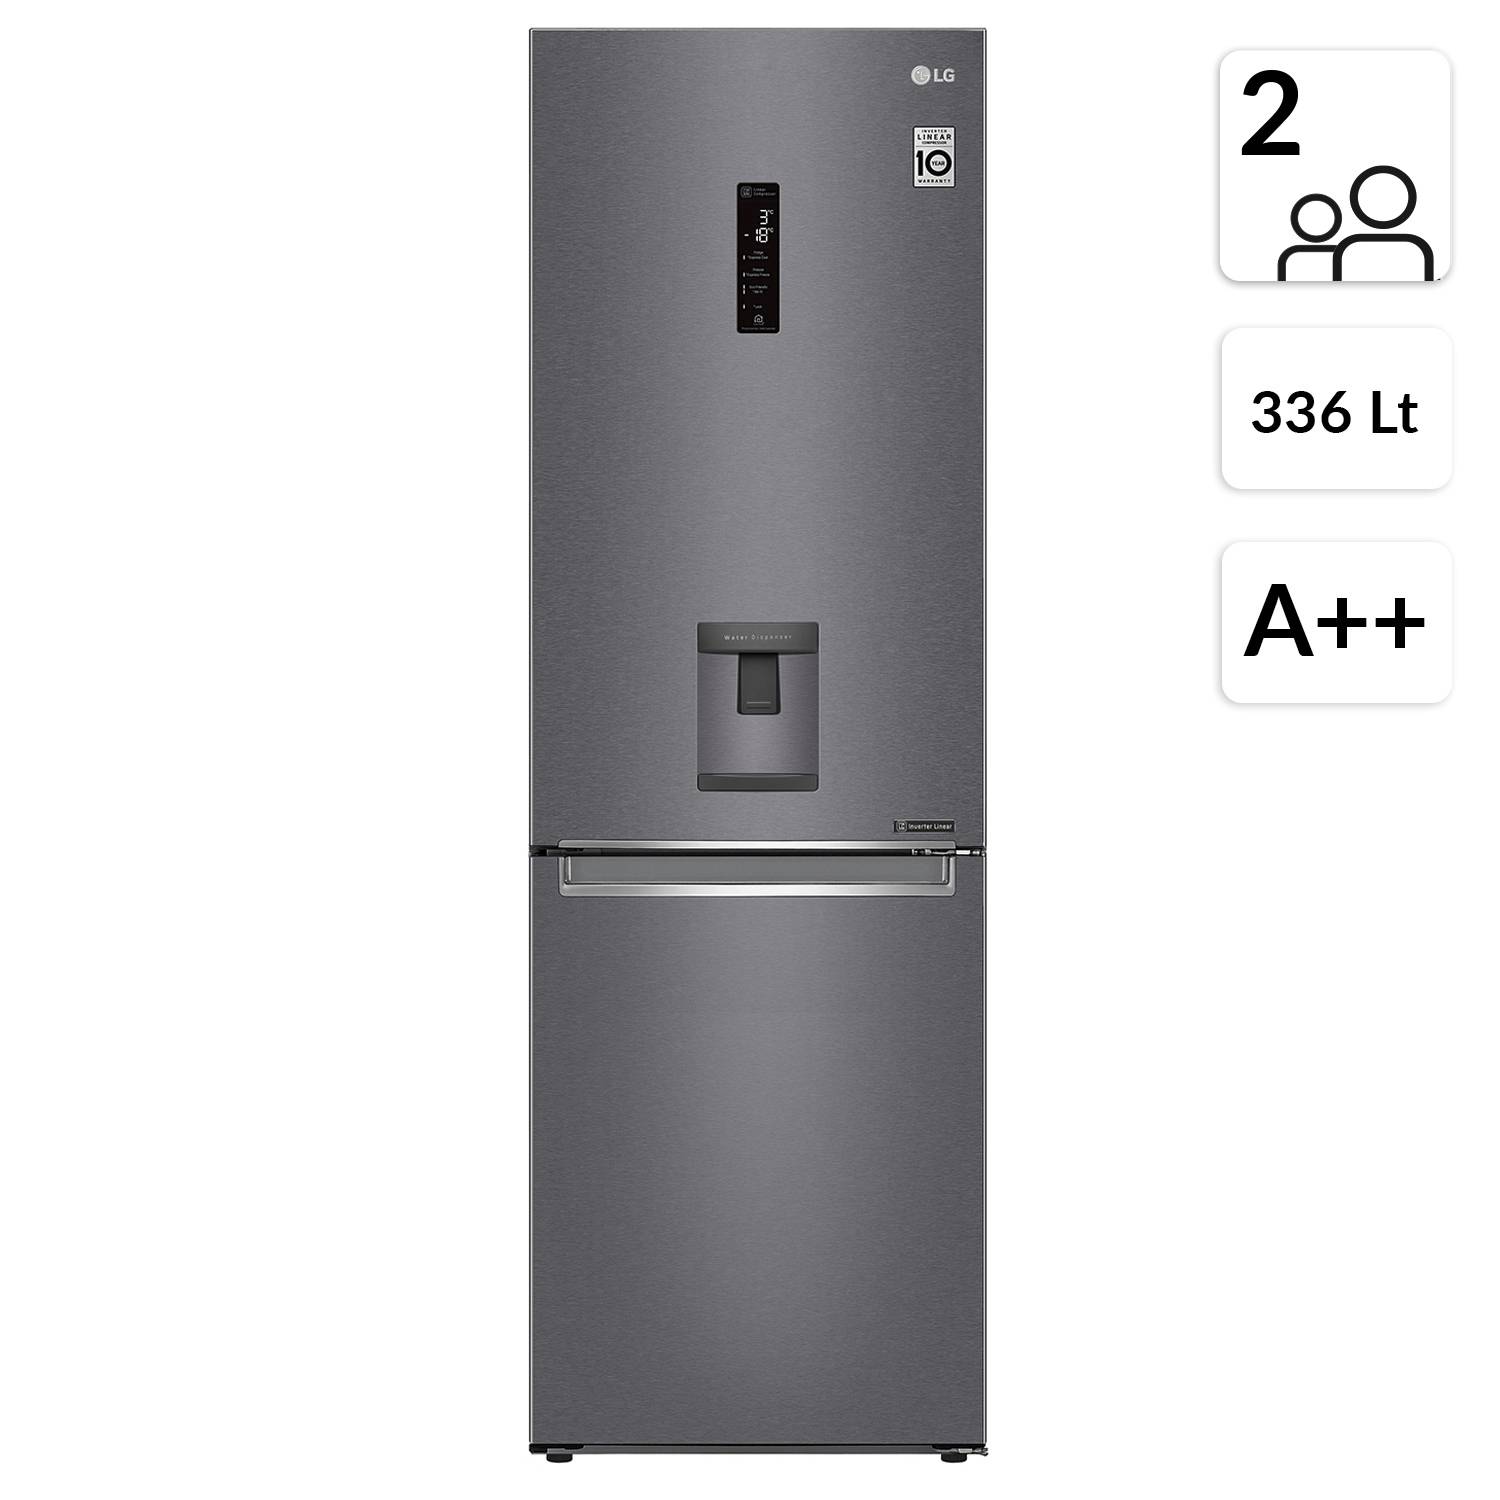 Lg Refrigerador Bottom Freezer Lb37spgk 336 Lt Falabella Com